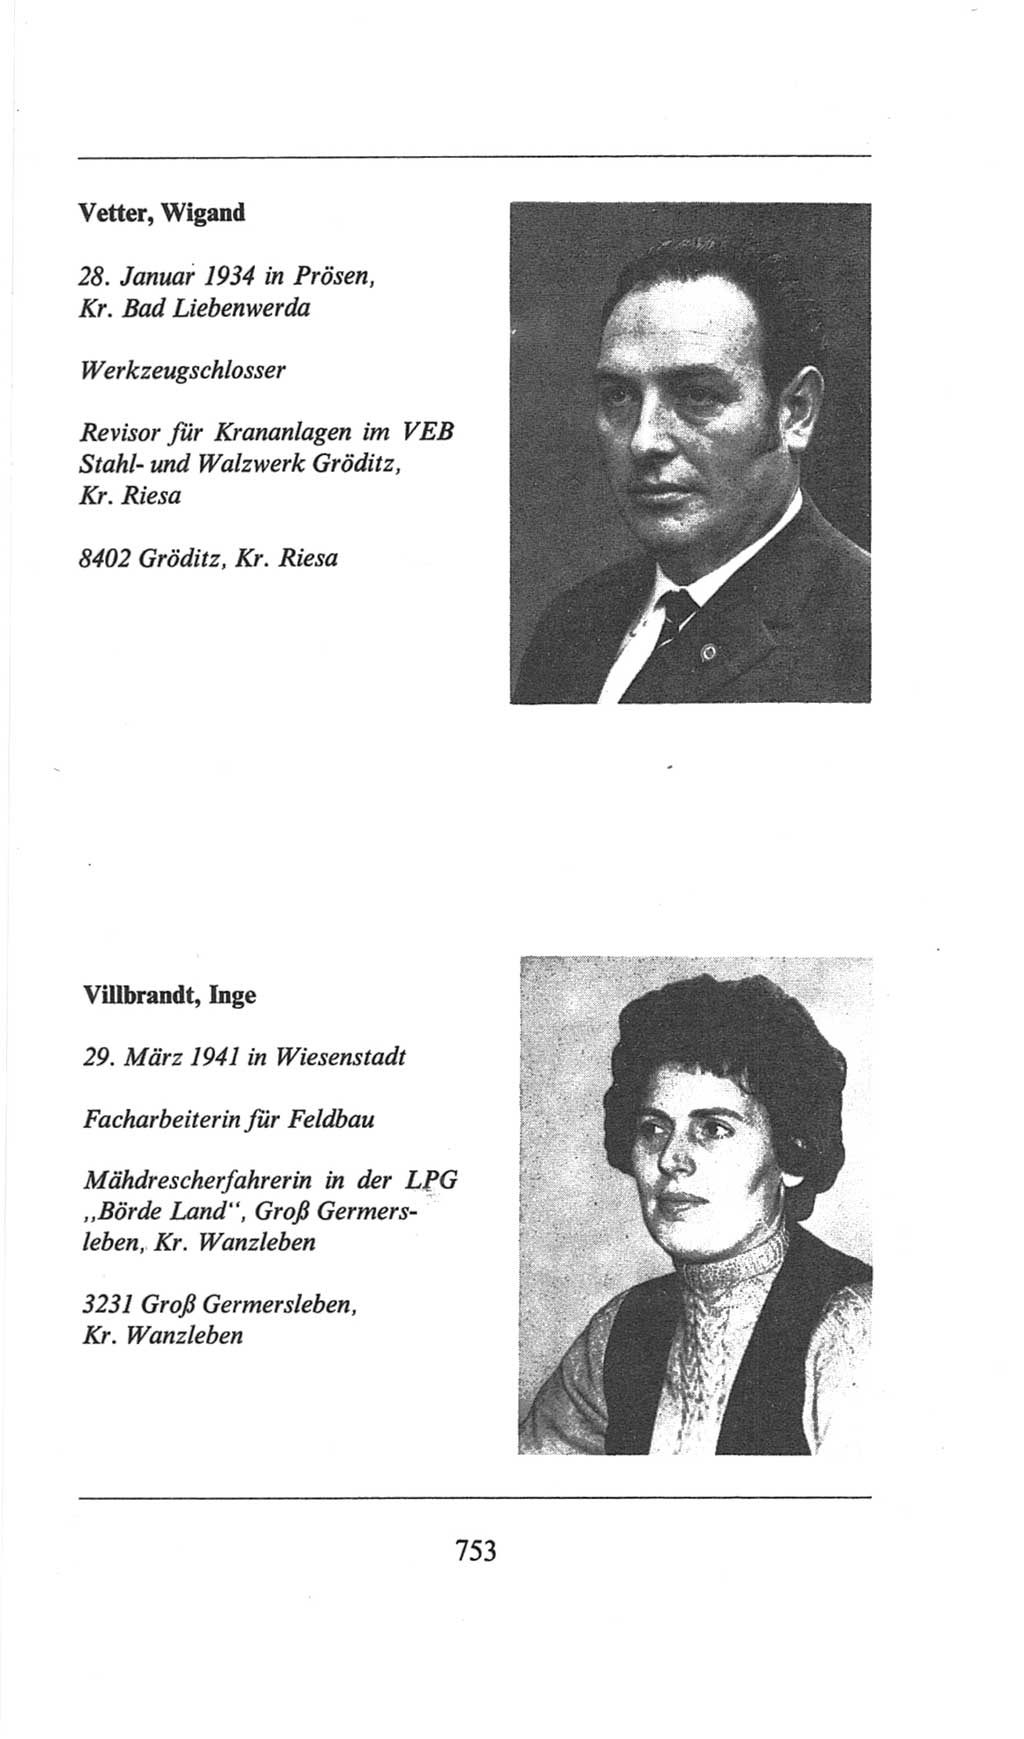 Volkskammer (VK) der Deutschen Demokratischen Republik (DDR), 6. Wahlperiode 1971-1976, Seite 753 (VK. DDR 6. WP. 1971-1976, S. 753)